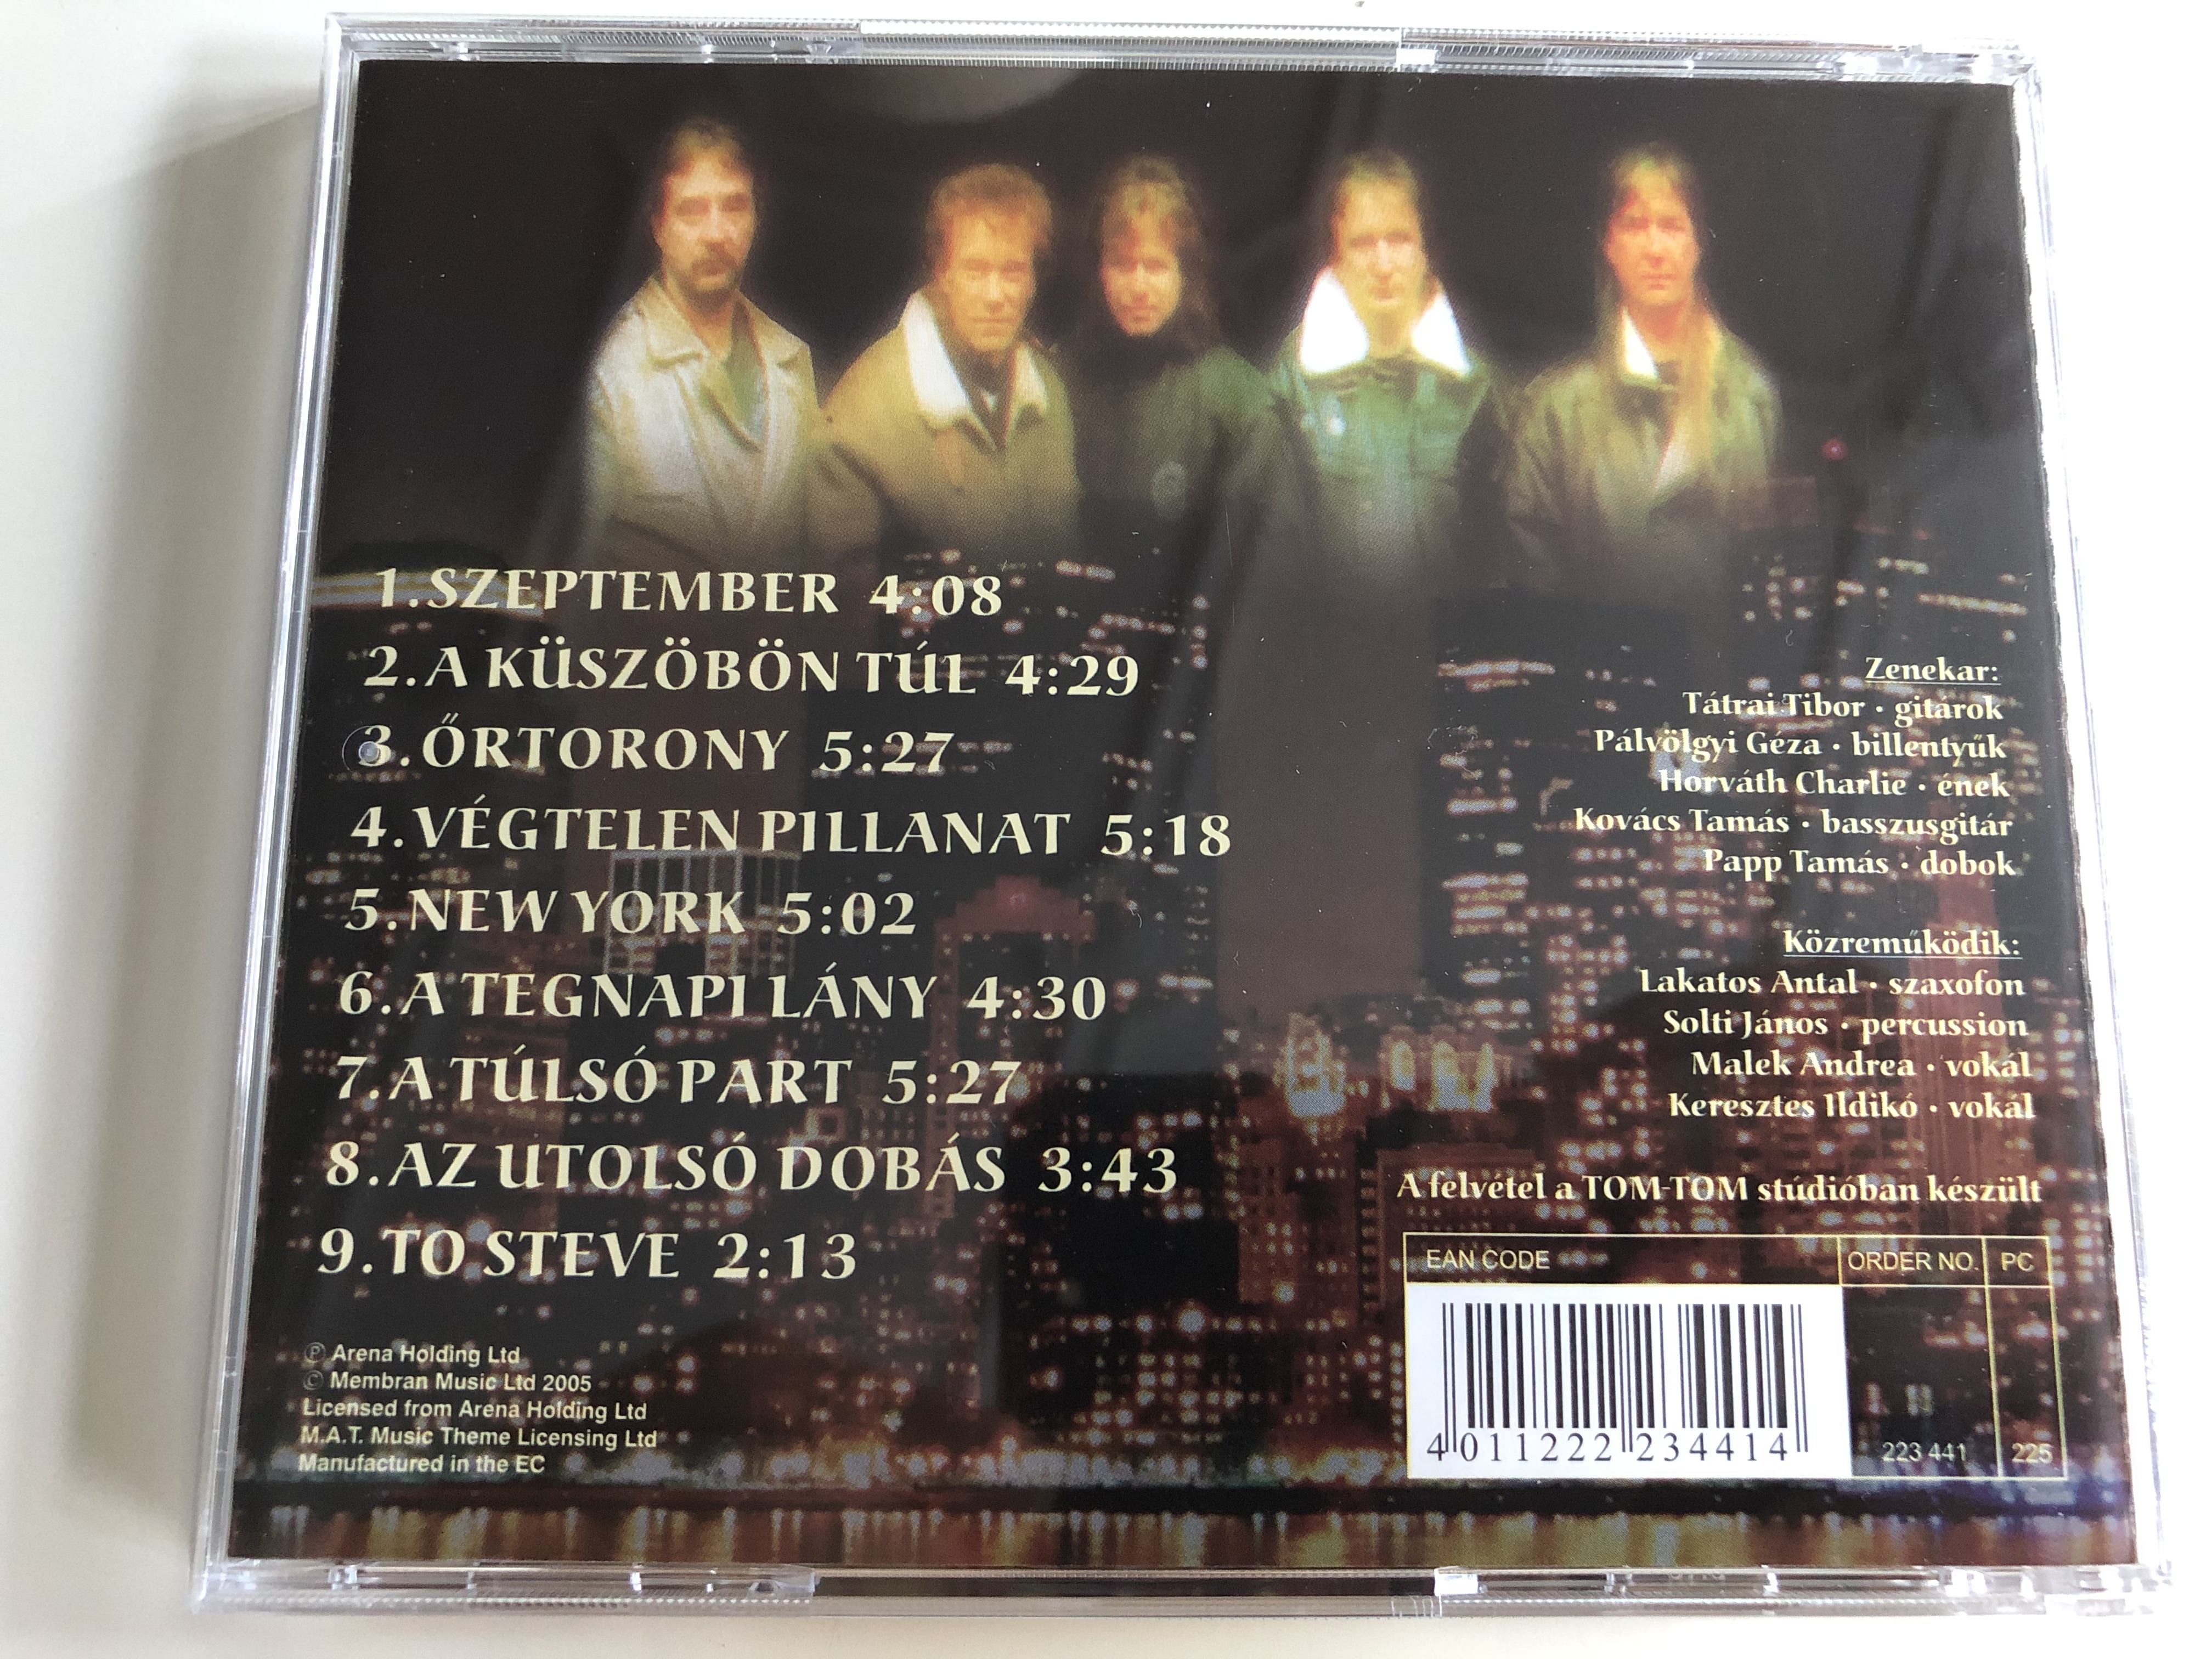 t-trai-band-a-k-sz-b-n-t-l-audio-cd-2005-223-441-6-.jpg